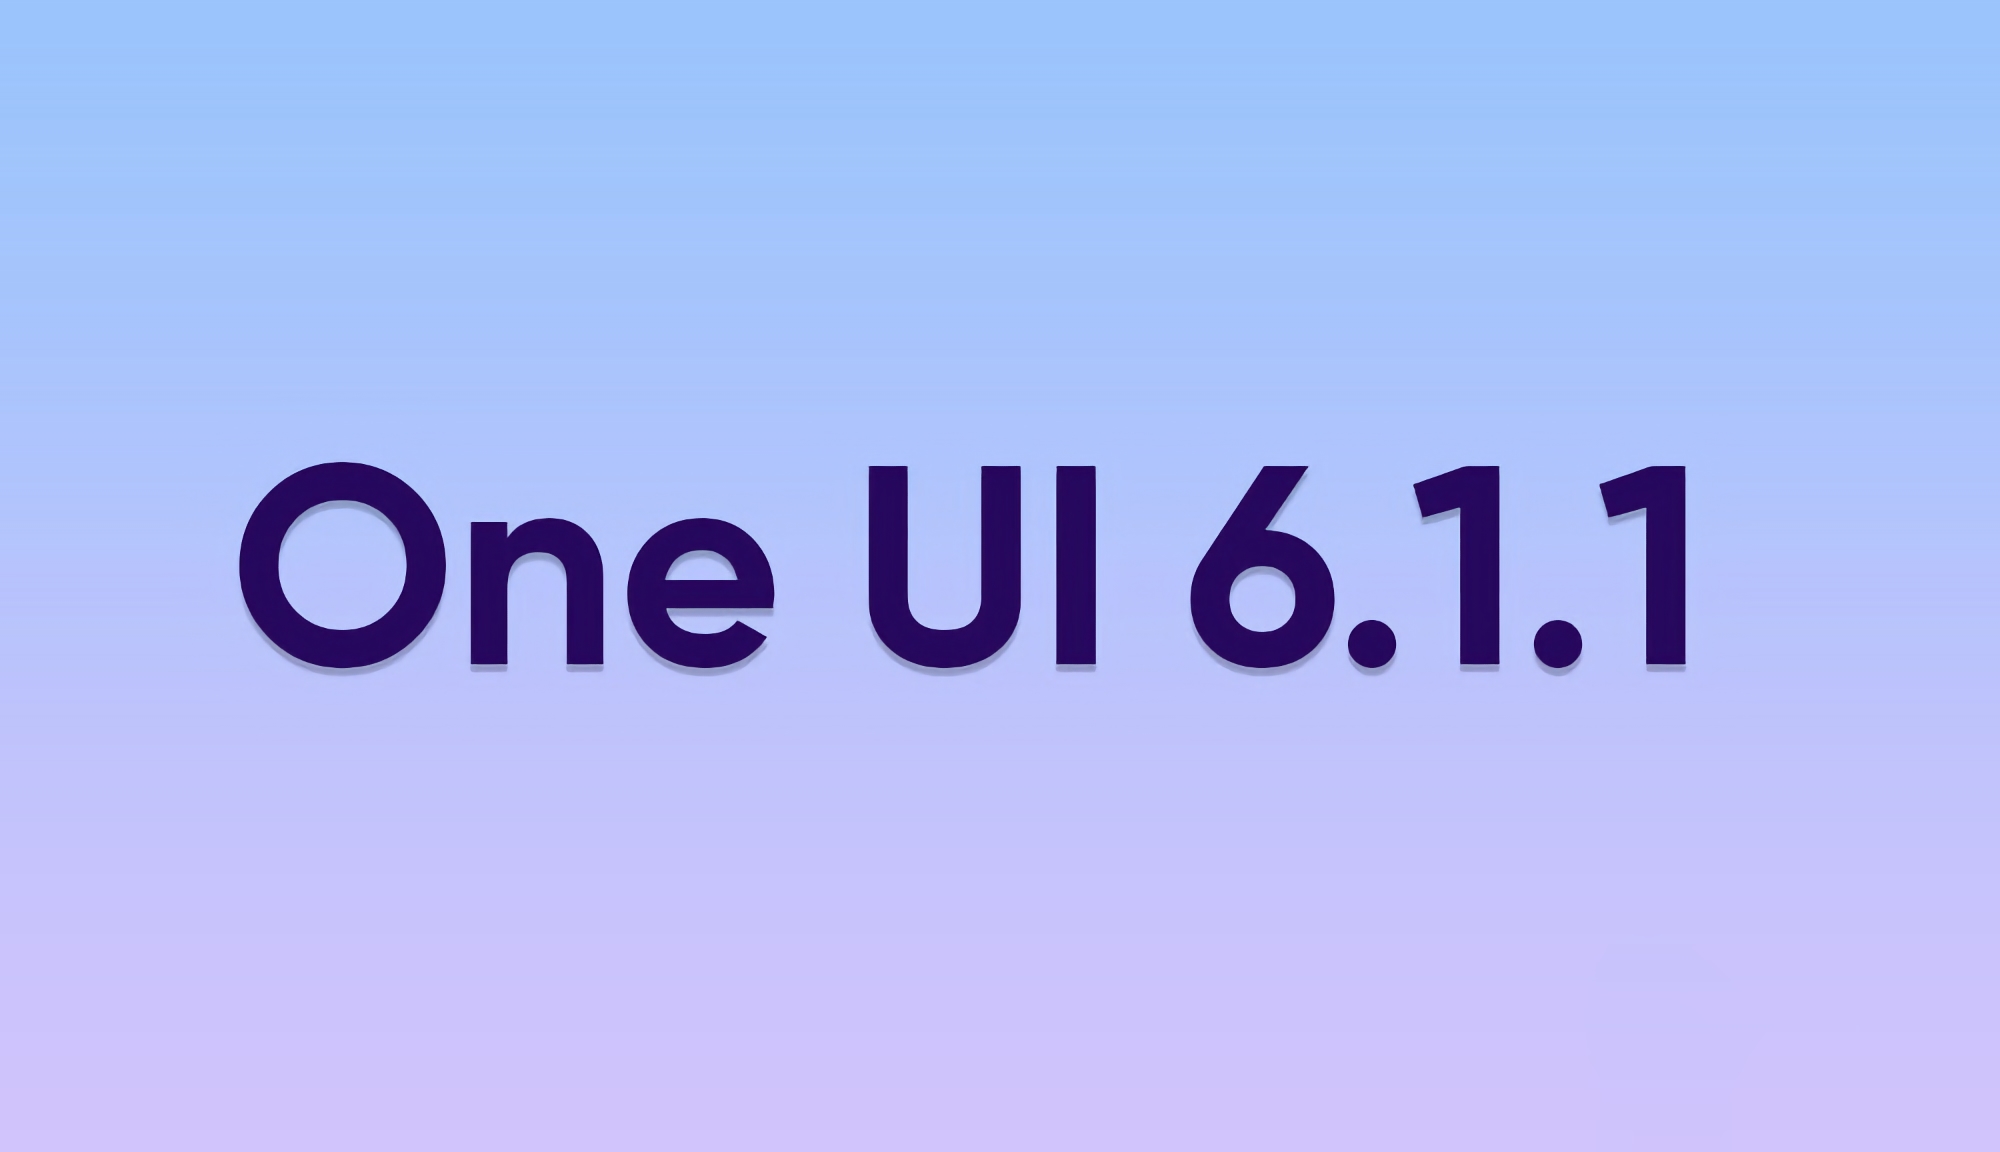 Які смартфони та планшети Samsung Galaxy отримають оновлення One UI 6.1.1 